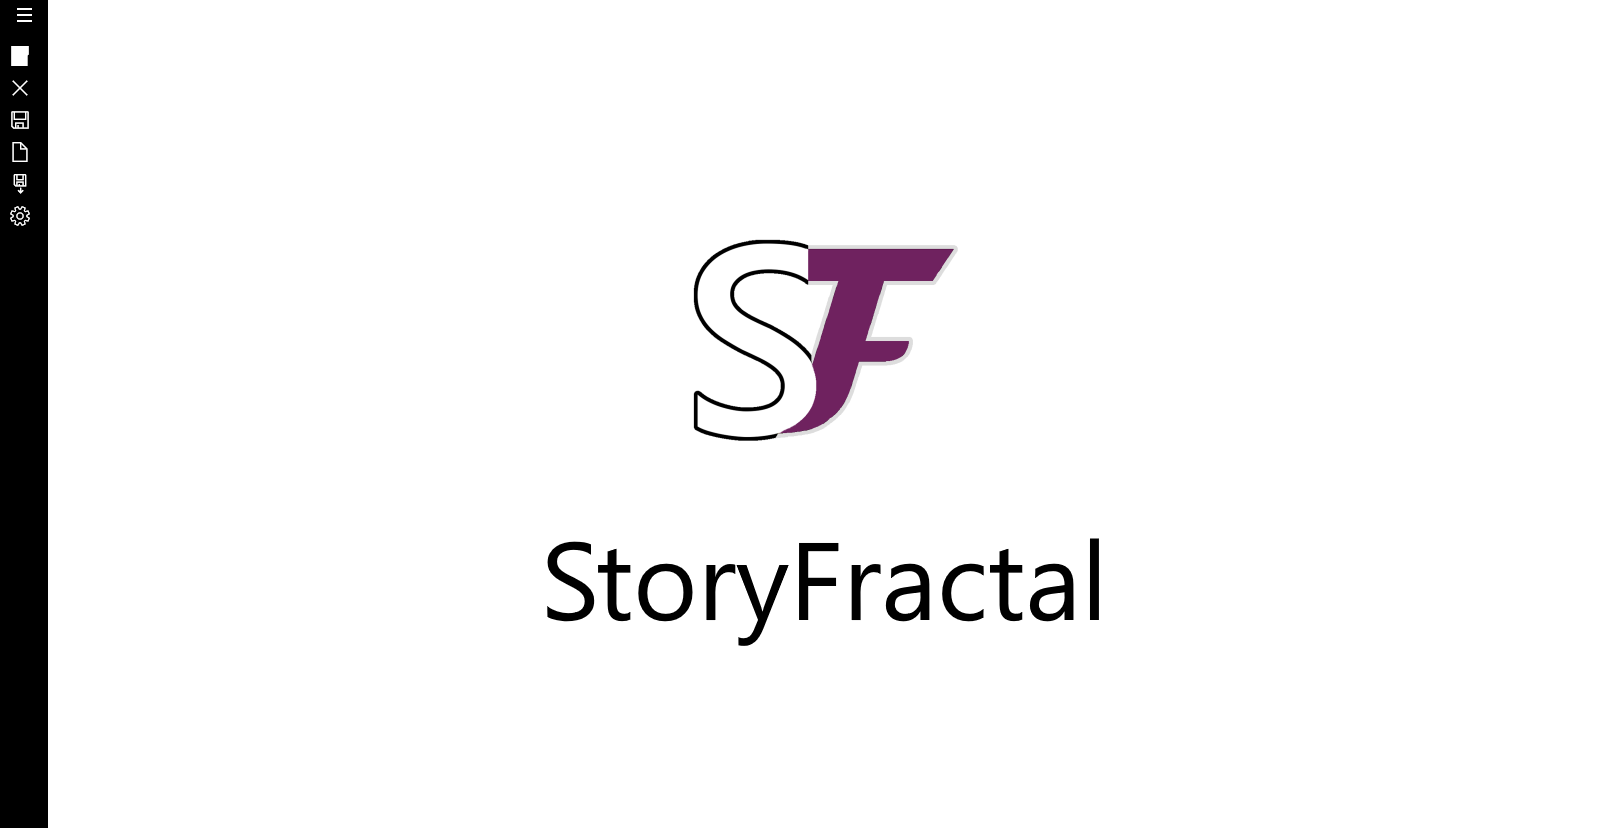 StoryFractal